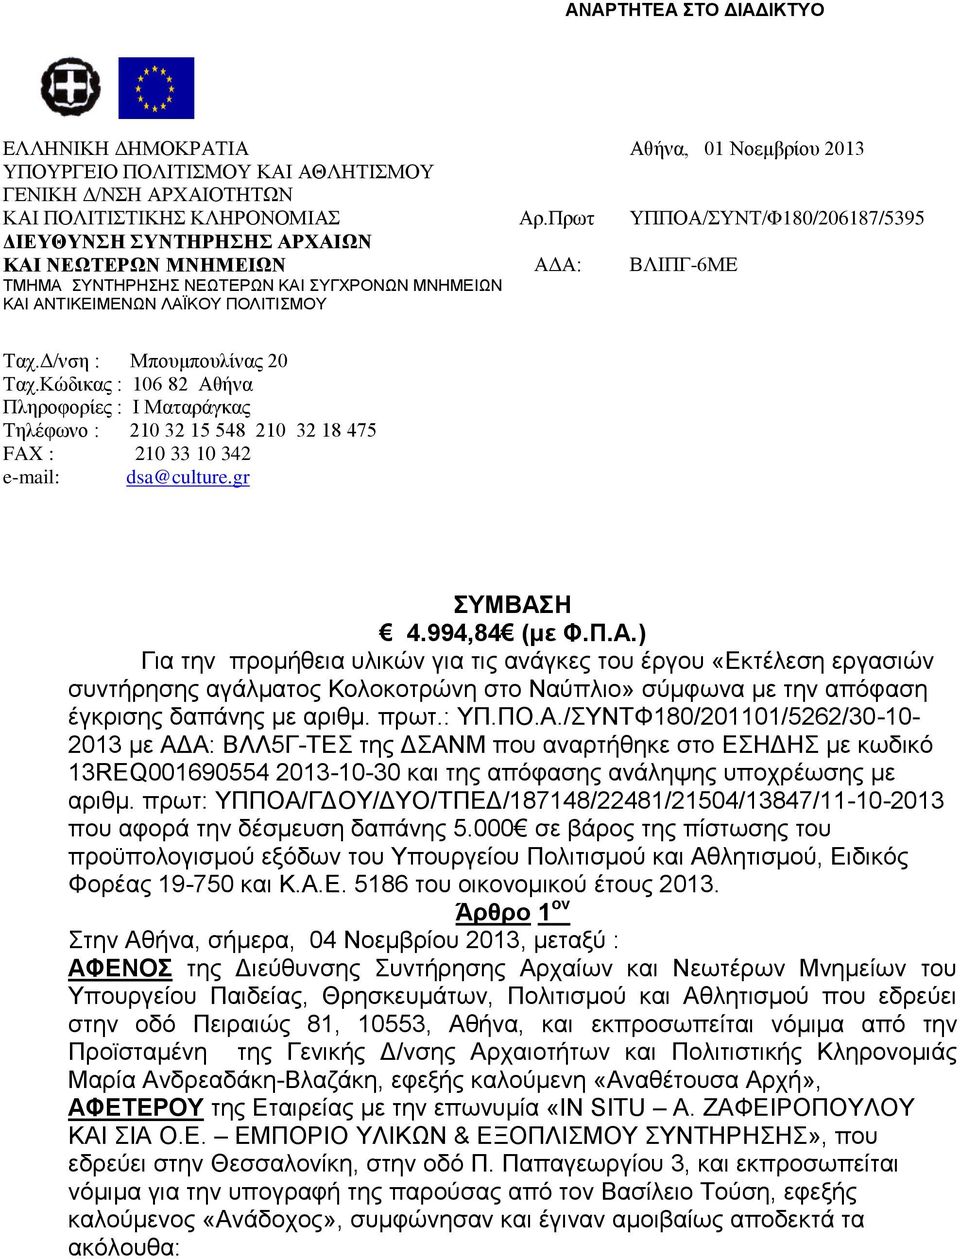 Κώδικας : 06 8 Αθήνα Πληροφορίες : Ι Ματαράγκας Τηλέφωνο : 0 3 5 548 0 3 8 475 FAX : 0 33 0 34 e-mail: dsa@culture.gr ΣΥΜΒΑΣΗ 4.994,84 (με Φ.Π.Α.) Για την προμήθεια υλικών για τις ανάγκες του έργου «Εκτέλεση εργασιών συντήρησης αγάλματος Κολοκοτρώνη στο Ναύπλιο» σύμφωνα με την απόφαση έγκρισης δαπάνης με αριθμ.